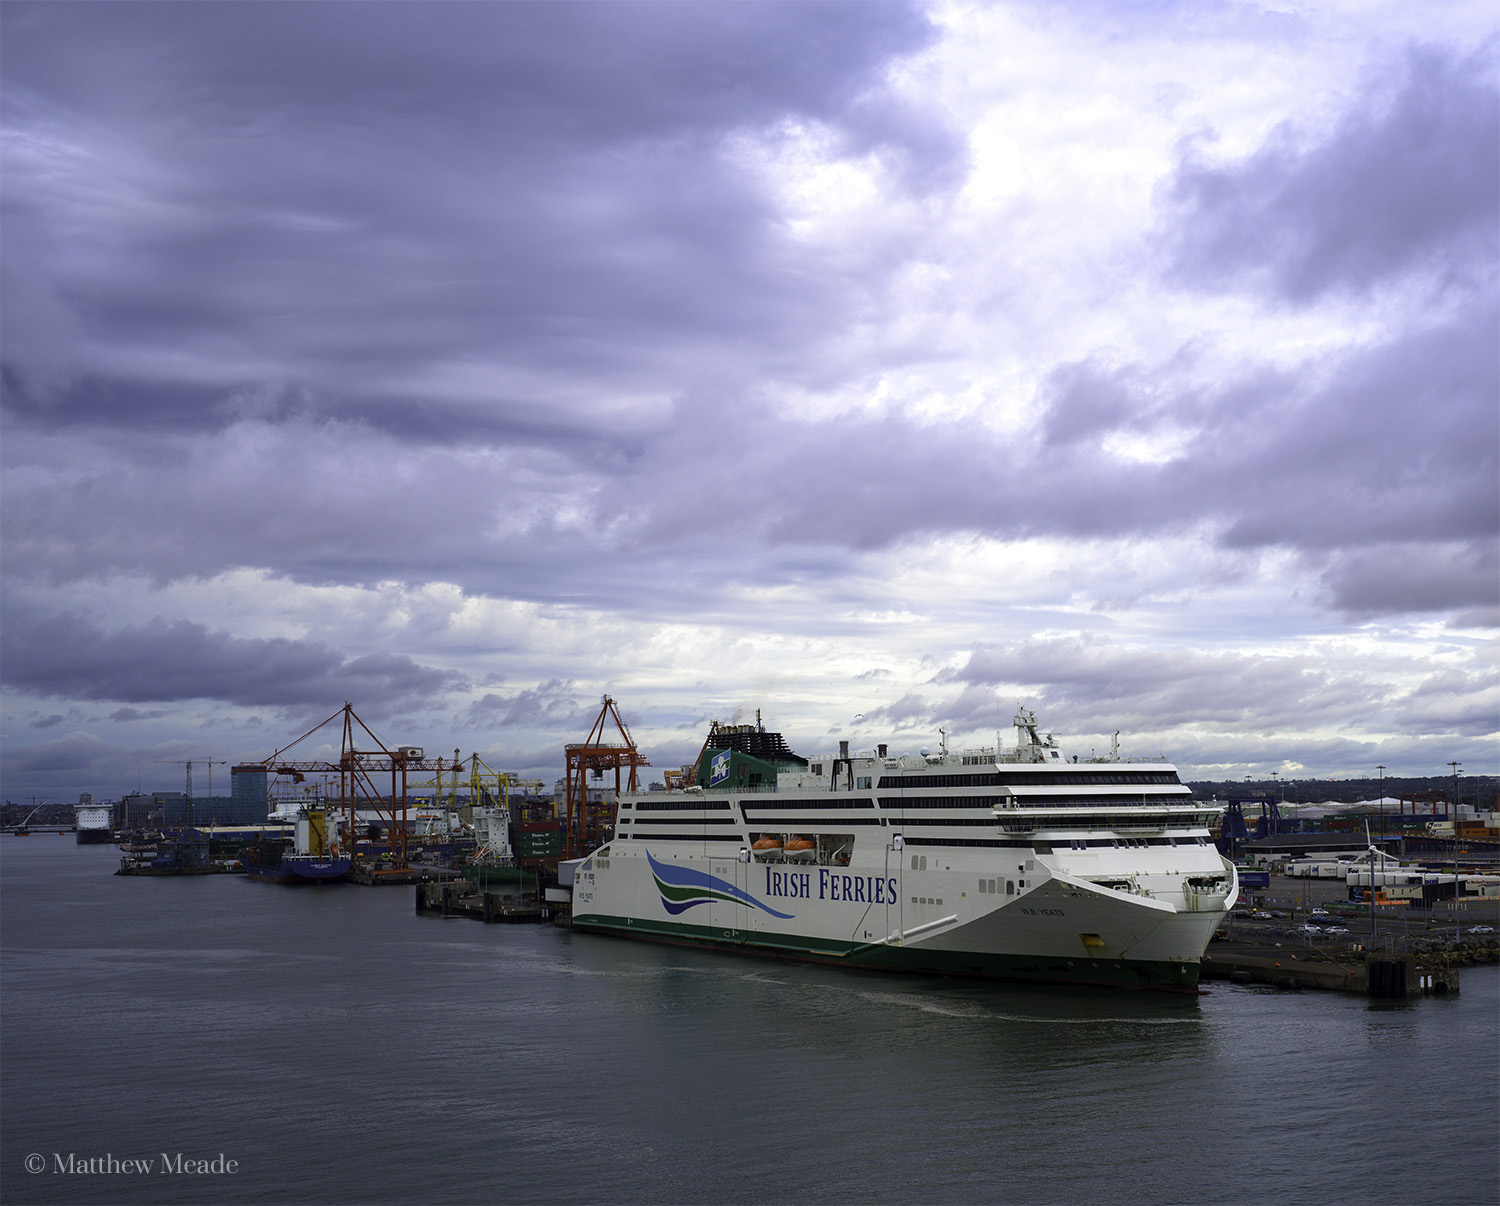 Irish Ferries - the "WB Yeats" loading